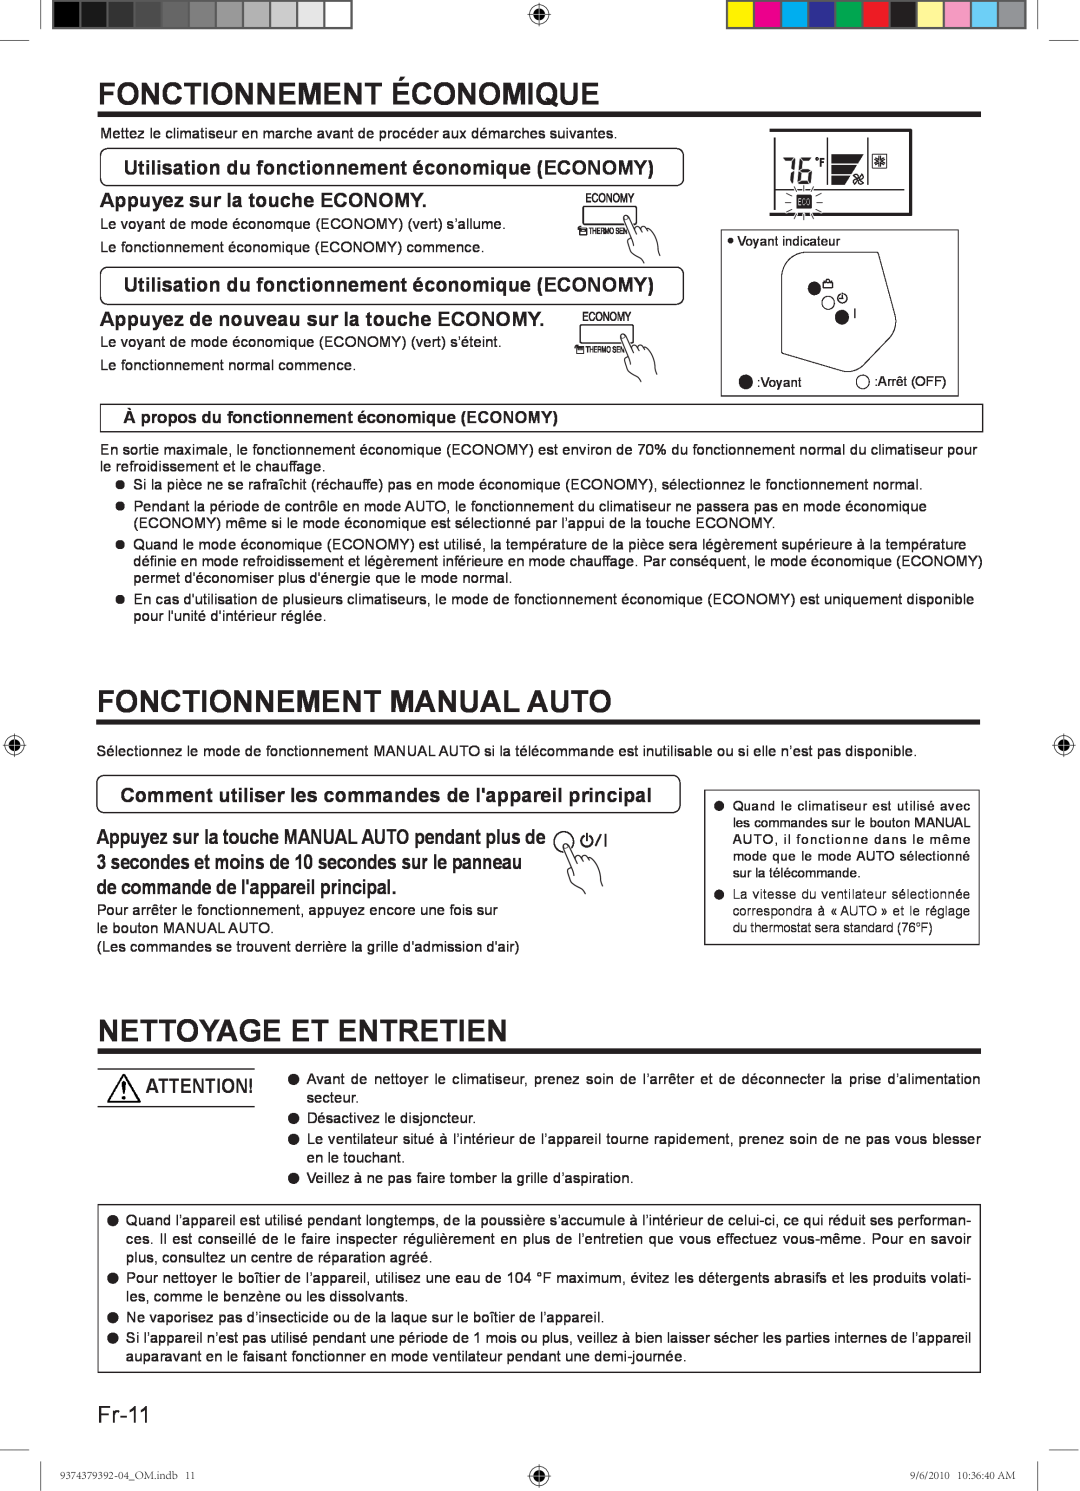 Fujitsu Halcyon Air Conditioner manual Fonctionnement Économique, Fonctionnement Manual Auto, Nettoyage Et Entretien, Fr-11 